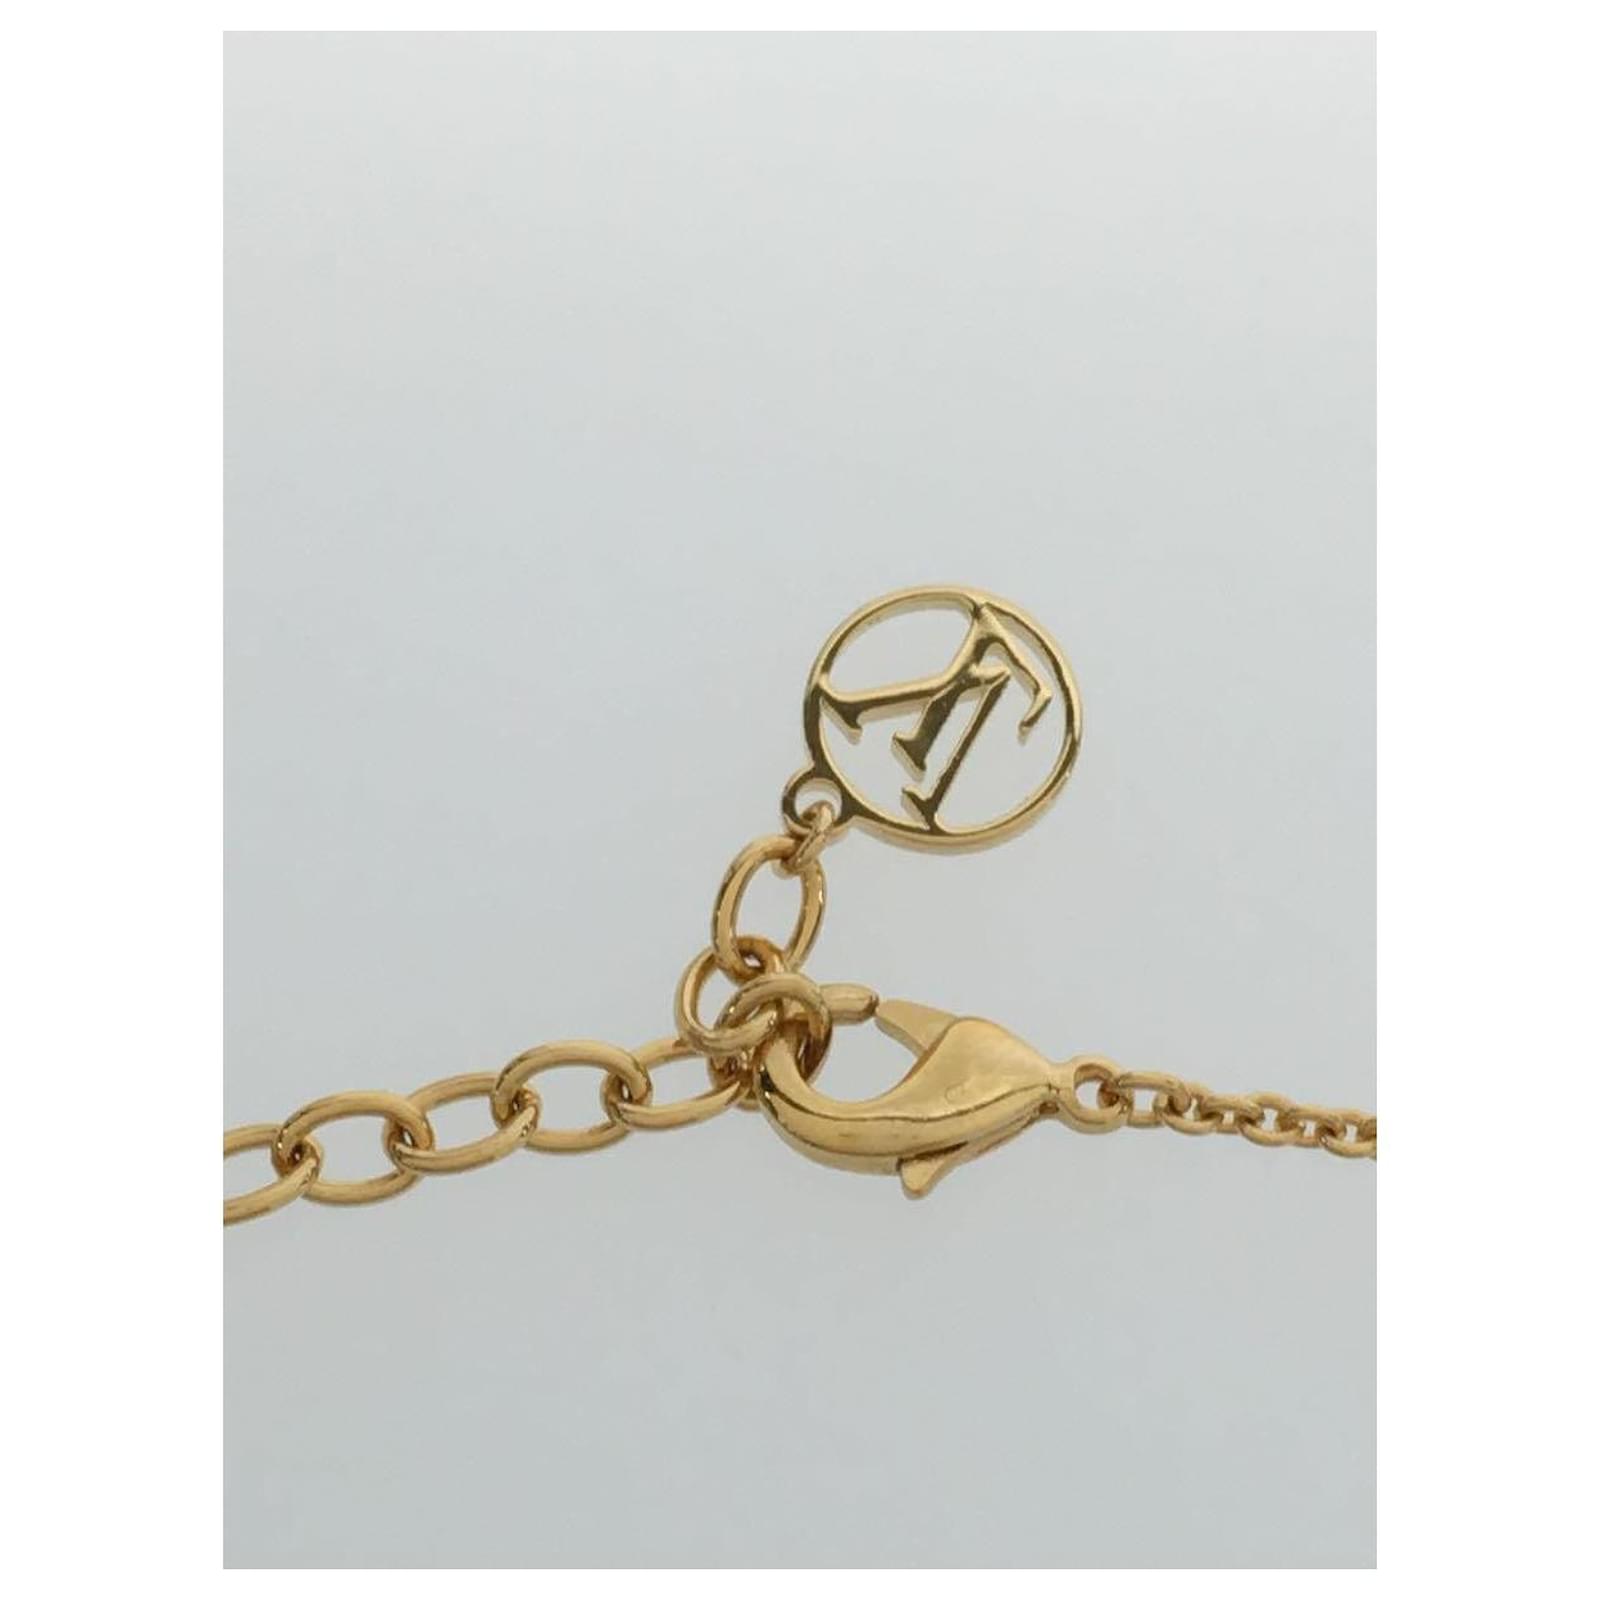 Louis Vuitton Flower Charm Bracelet in Metallic